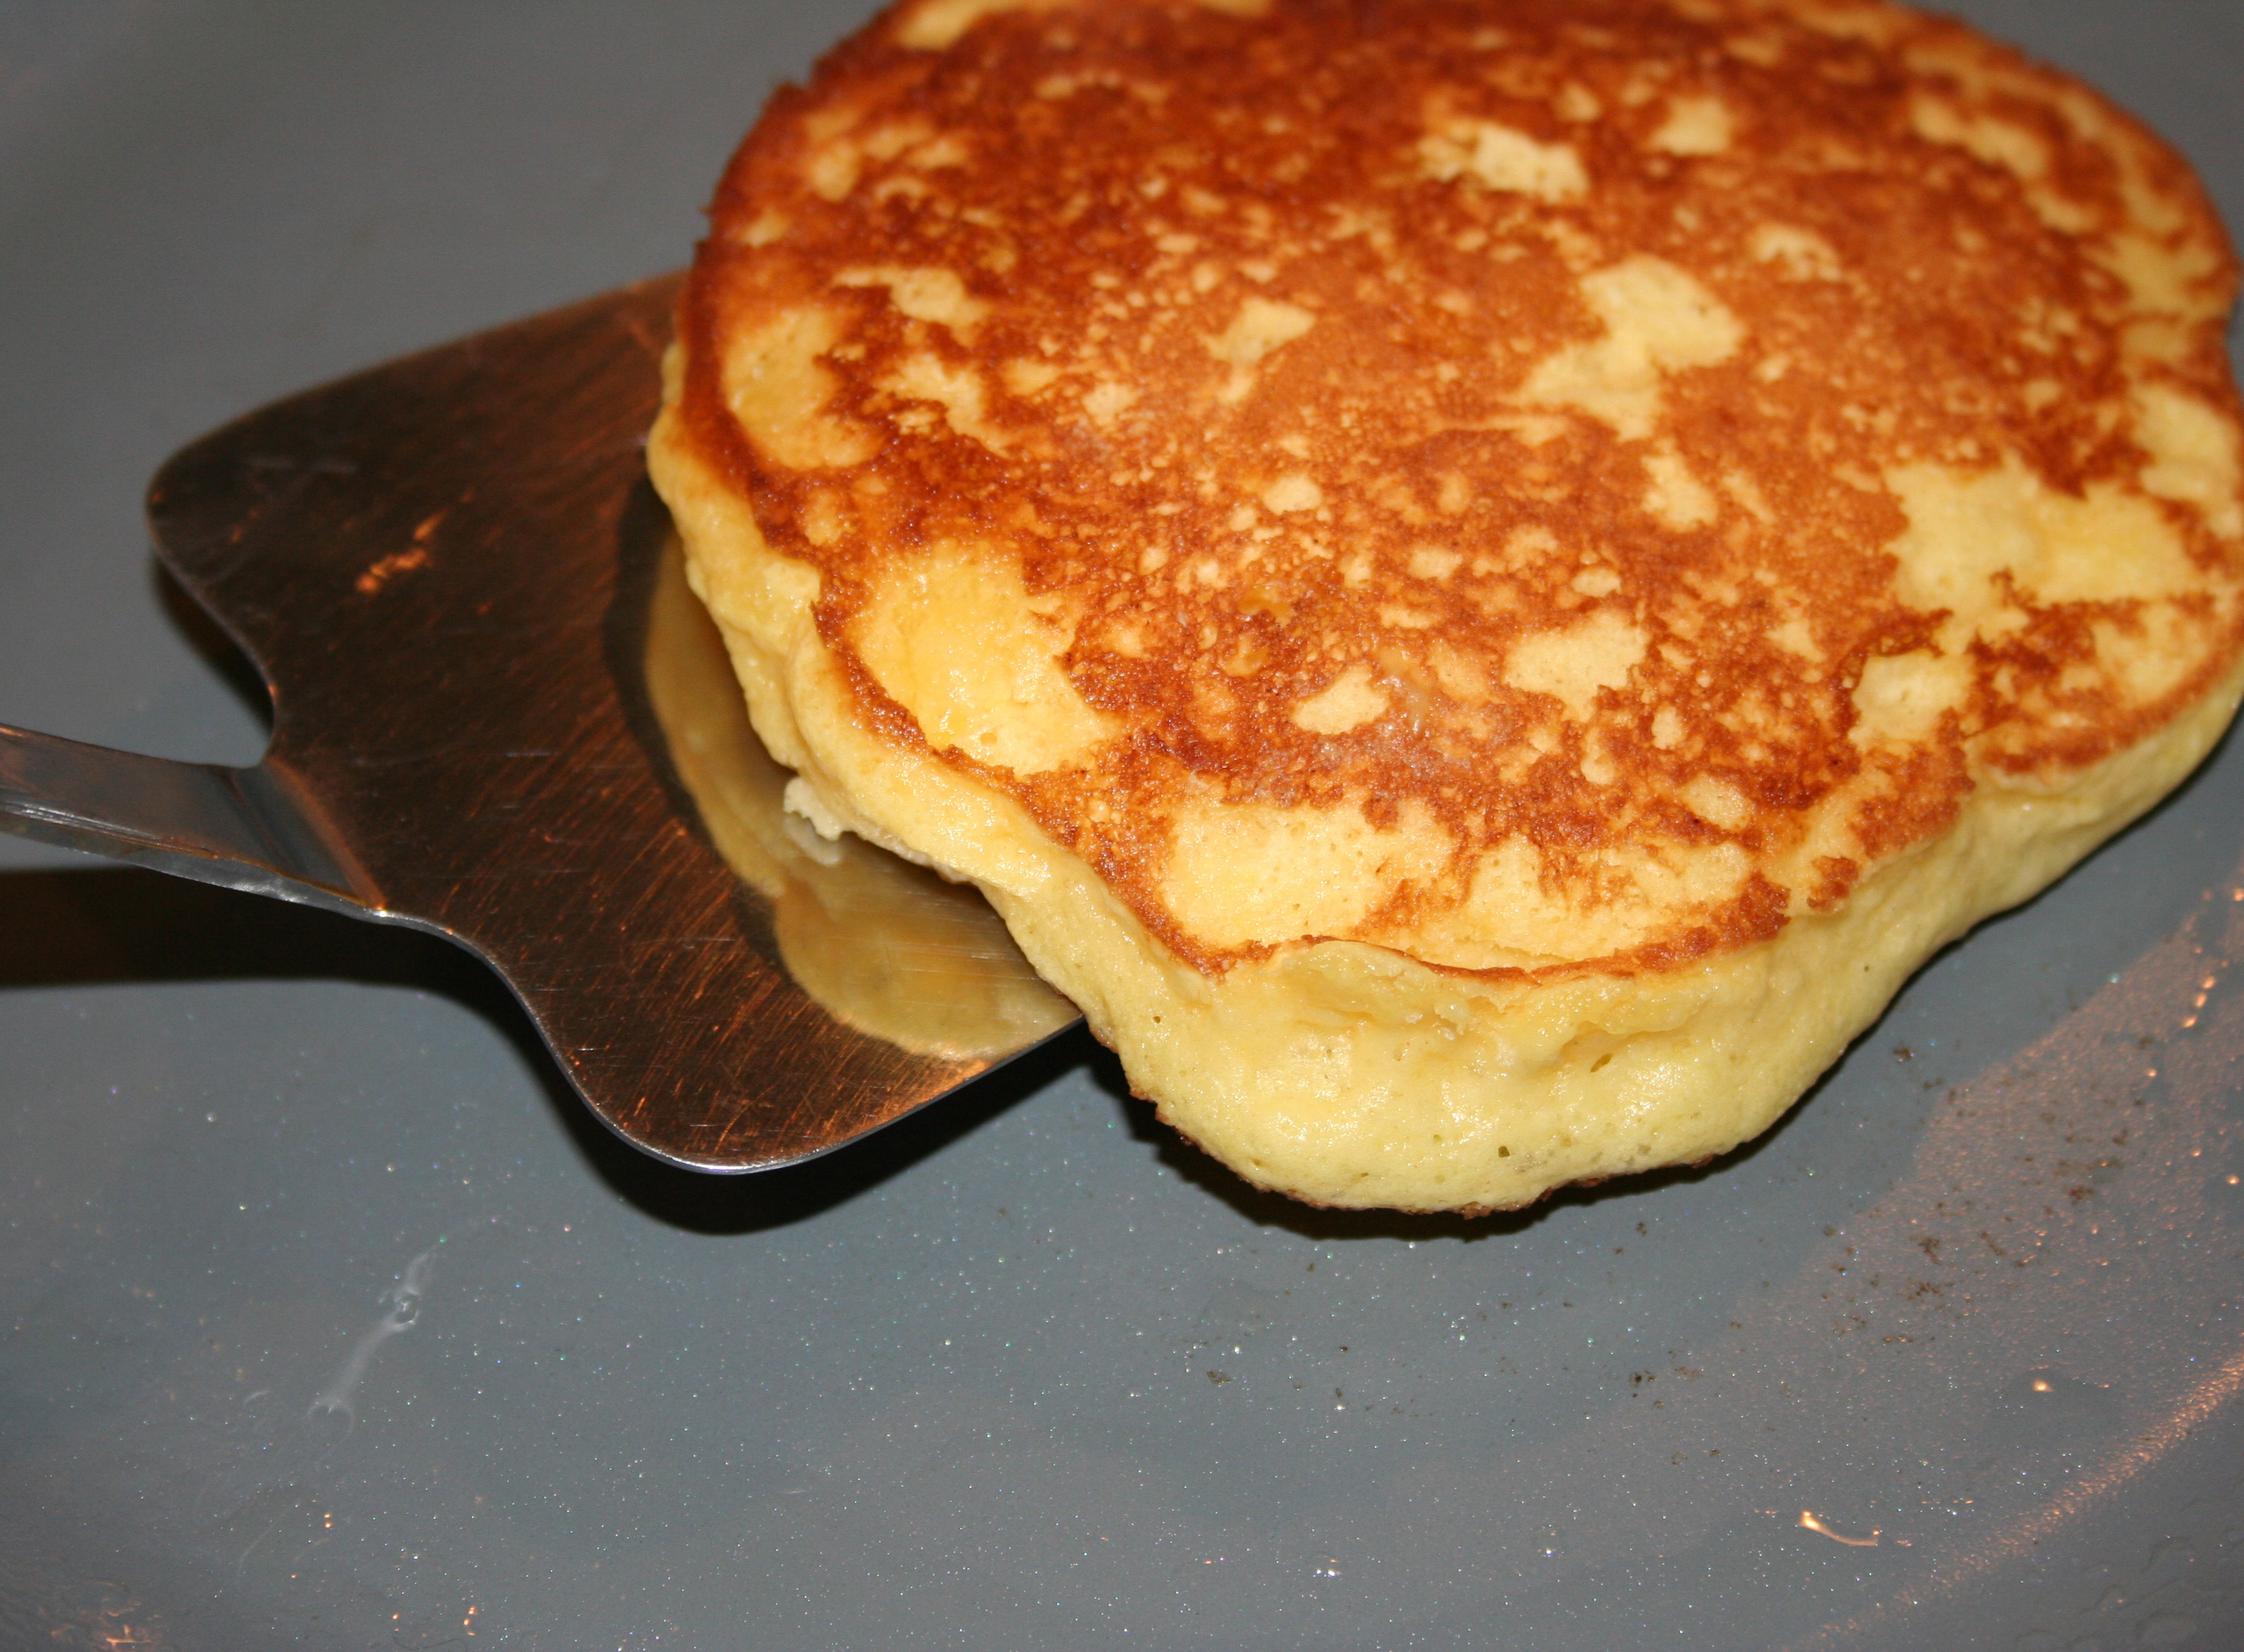 Flip the pancake